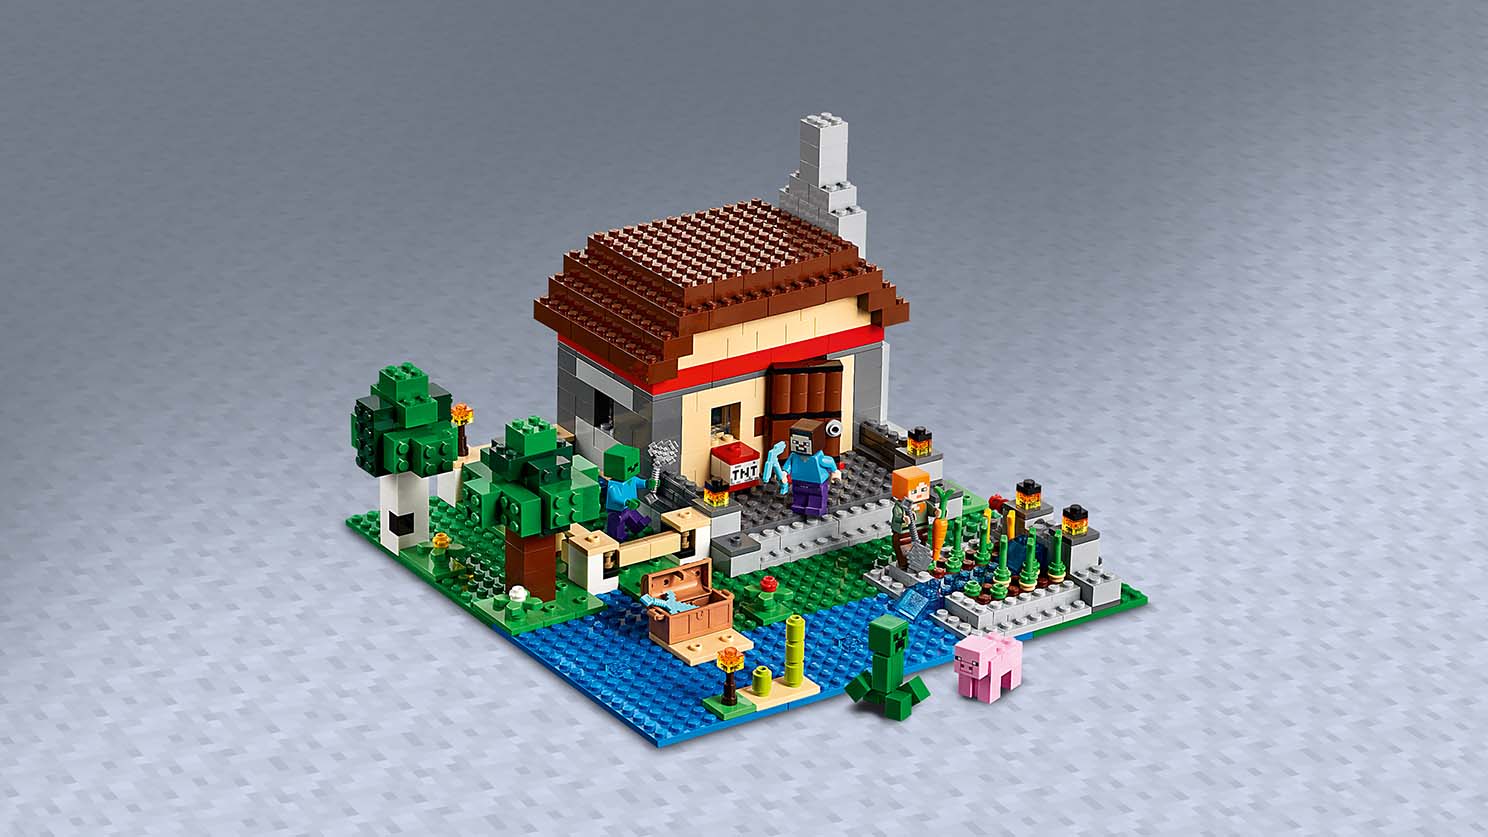 クラフトボックス 3.0 21161 - レゴ®マインクラフト セット - LEGO.com ...